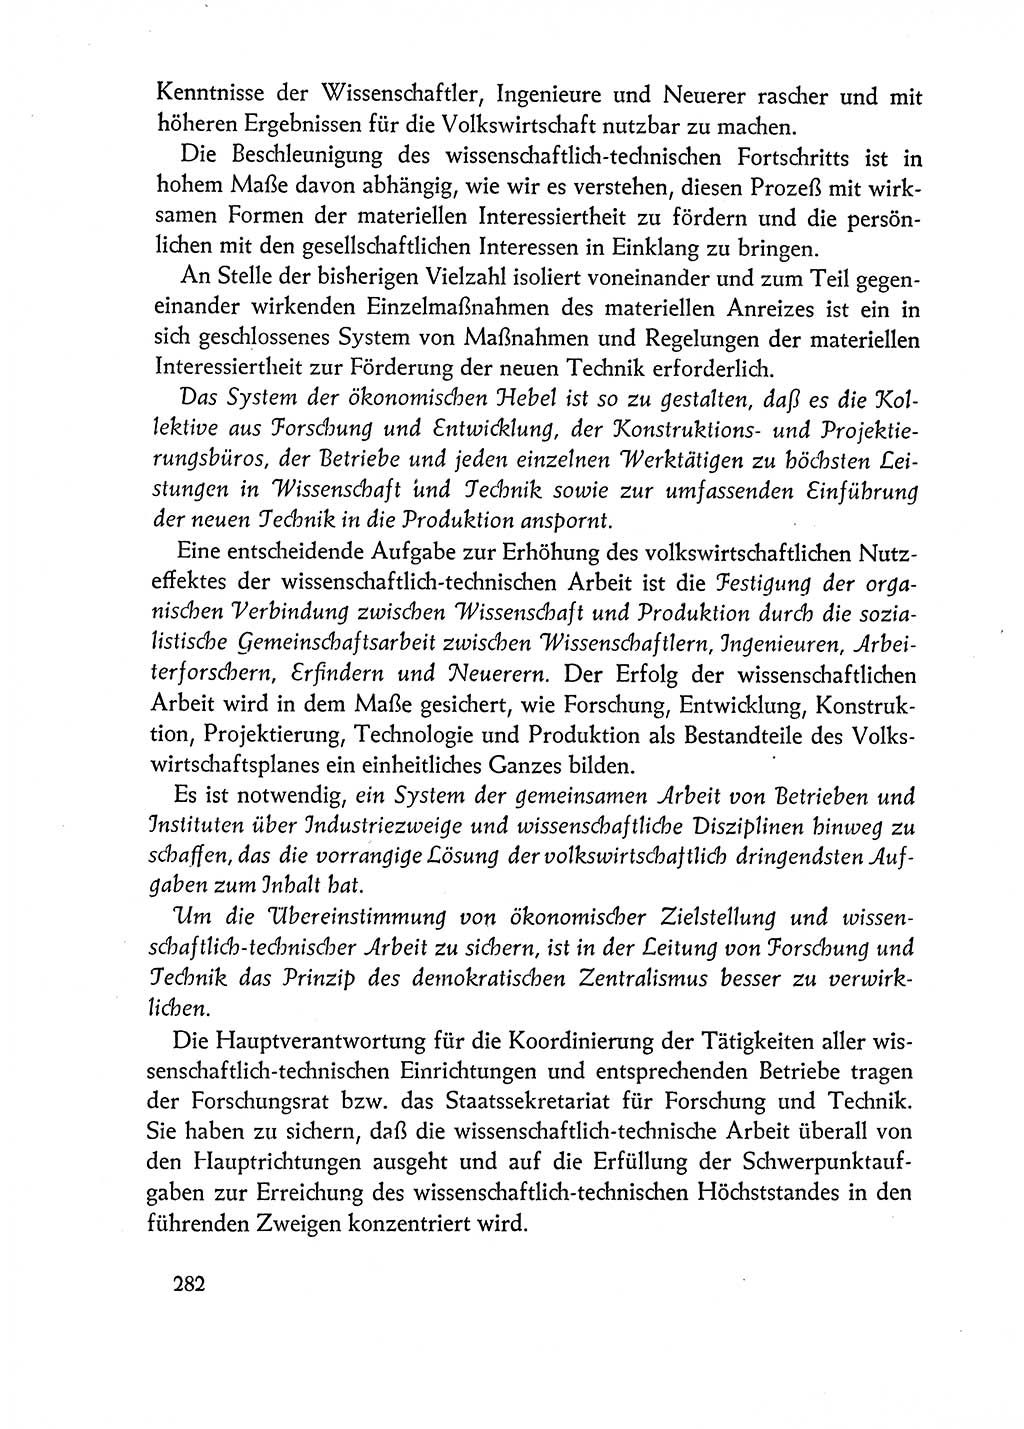 Dokumente der Sozialistischen Einheitspartei Deutschlands (SED) [Deutsche Demokratische Republik (DDR)] 1962-1963, Seite 282 (Dok. SED DDR 1962-1963, S. 282)